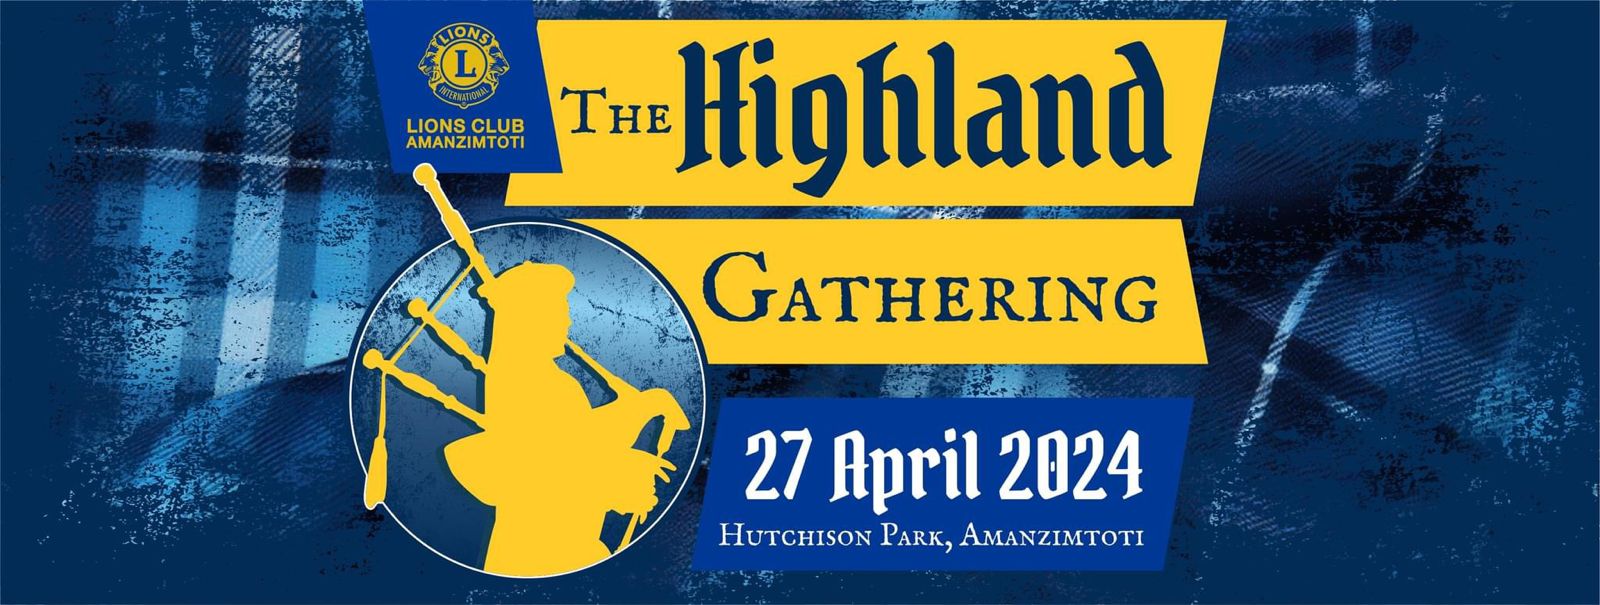 Highland Gathering 2024